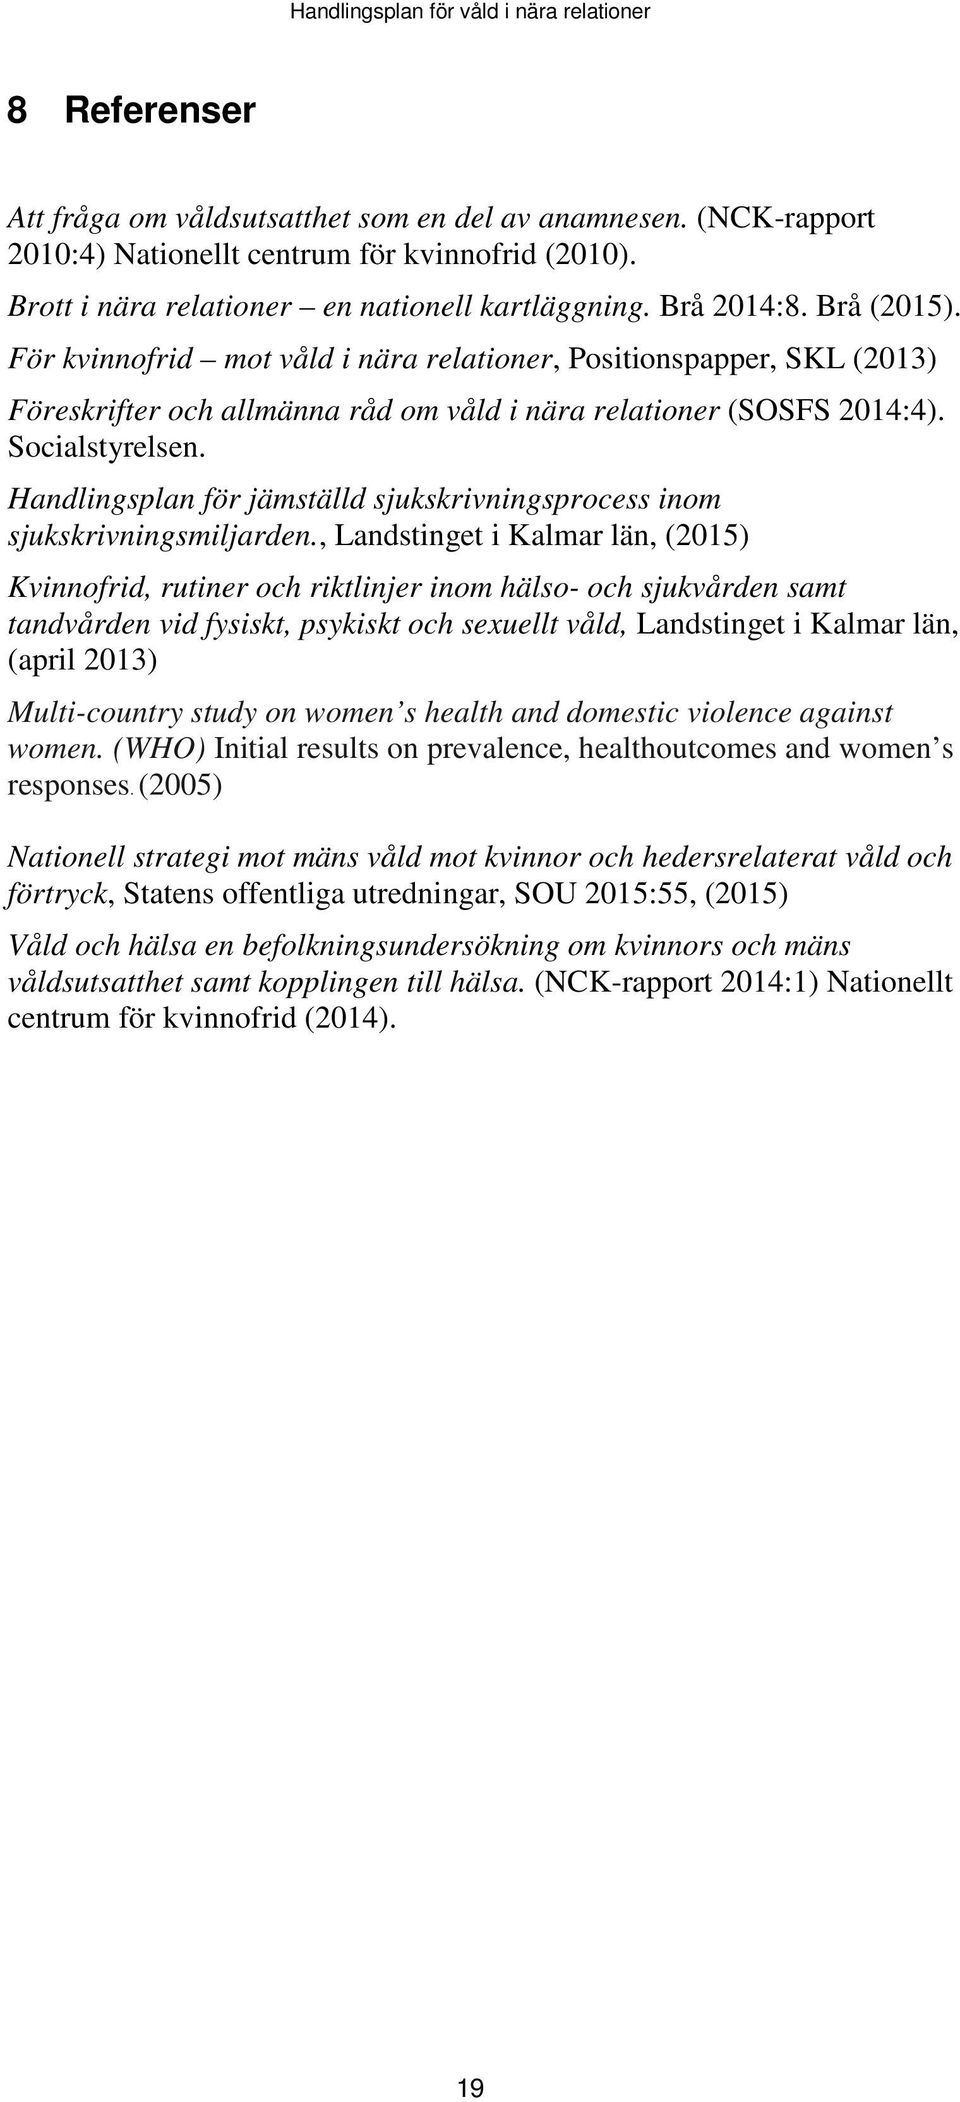 Handlingsplan för jämställd sjukskrivningsprocess inom sjukskrivningsmiljarden.